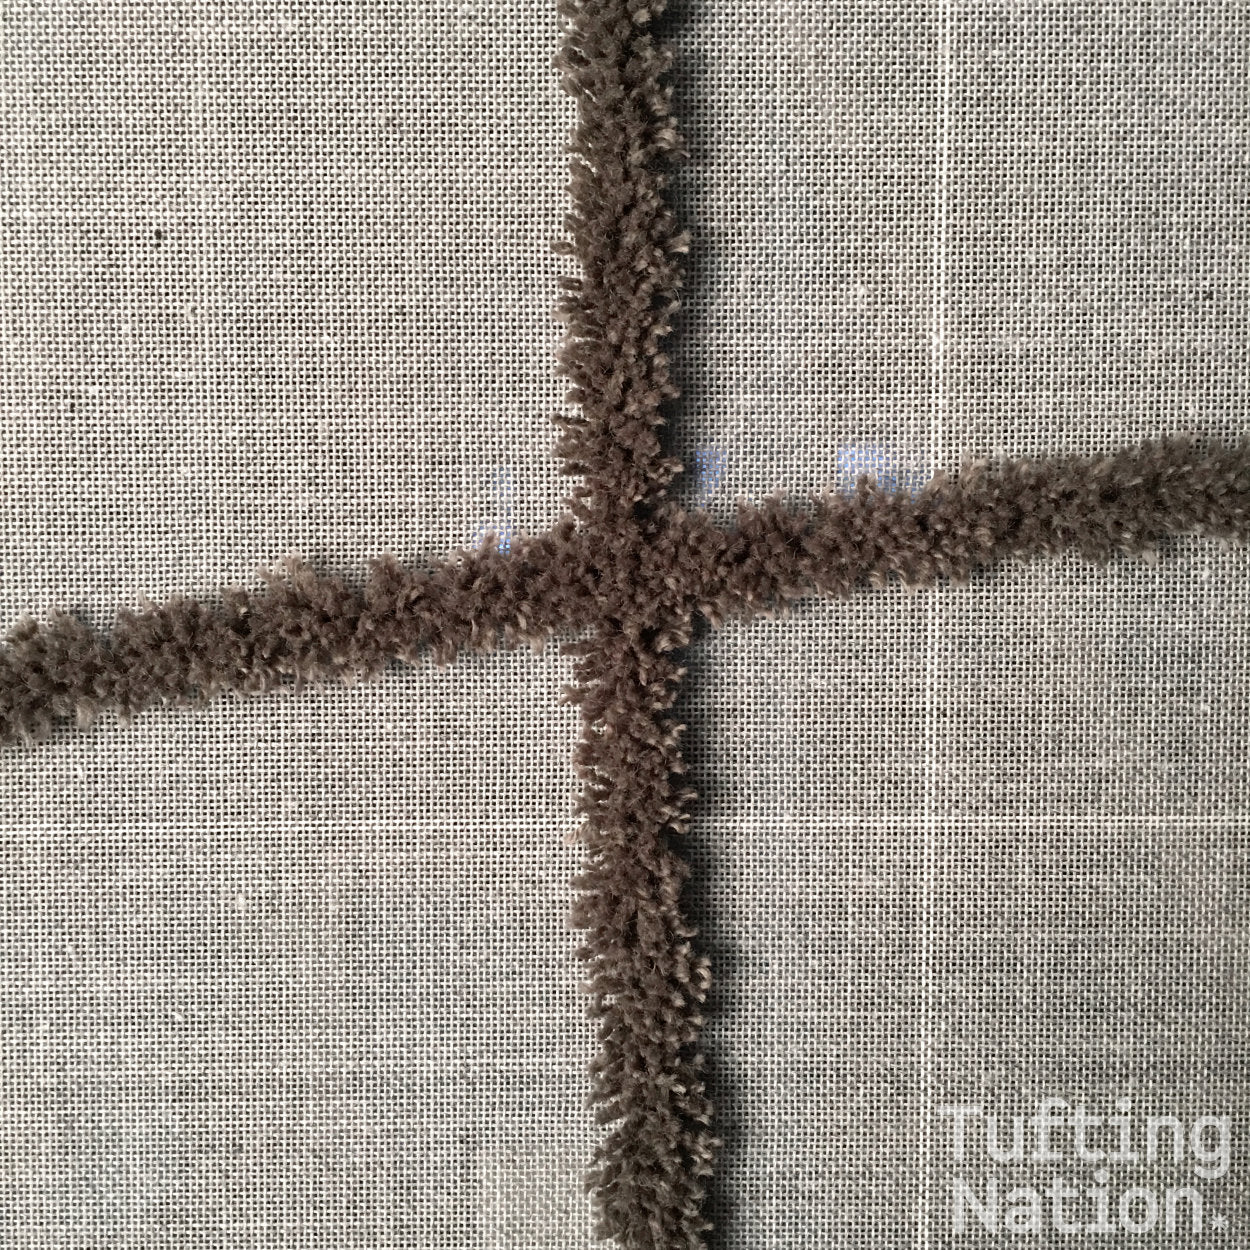 Rug Yarn tufted on a gray tufting cloth | TuftingNation